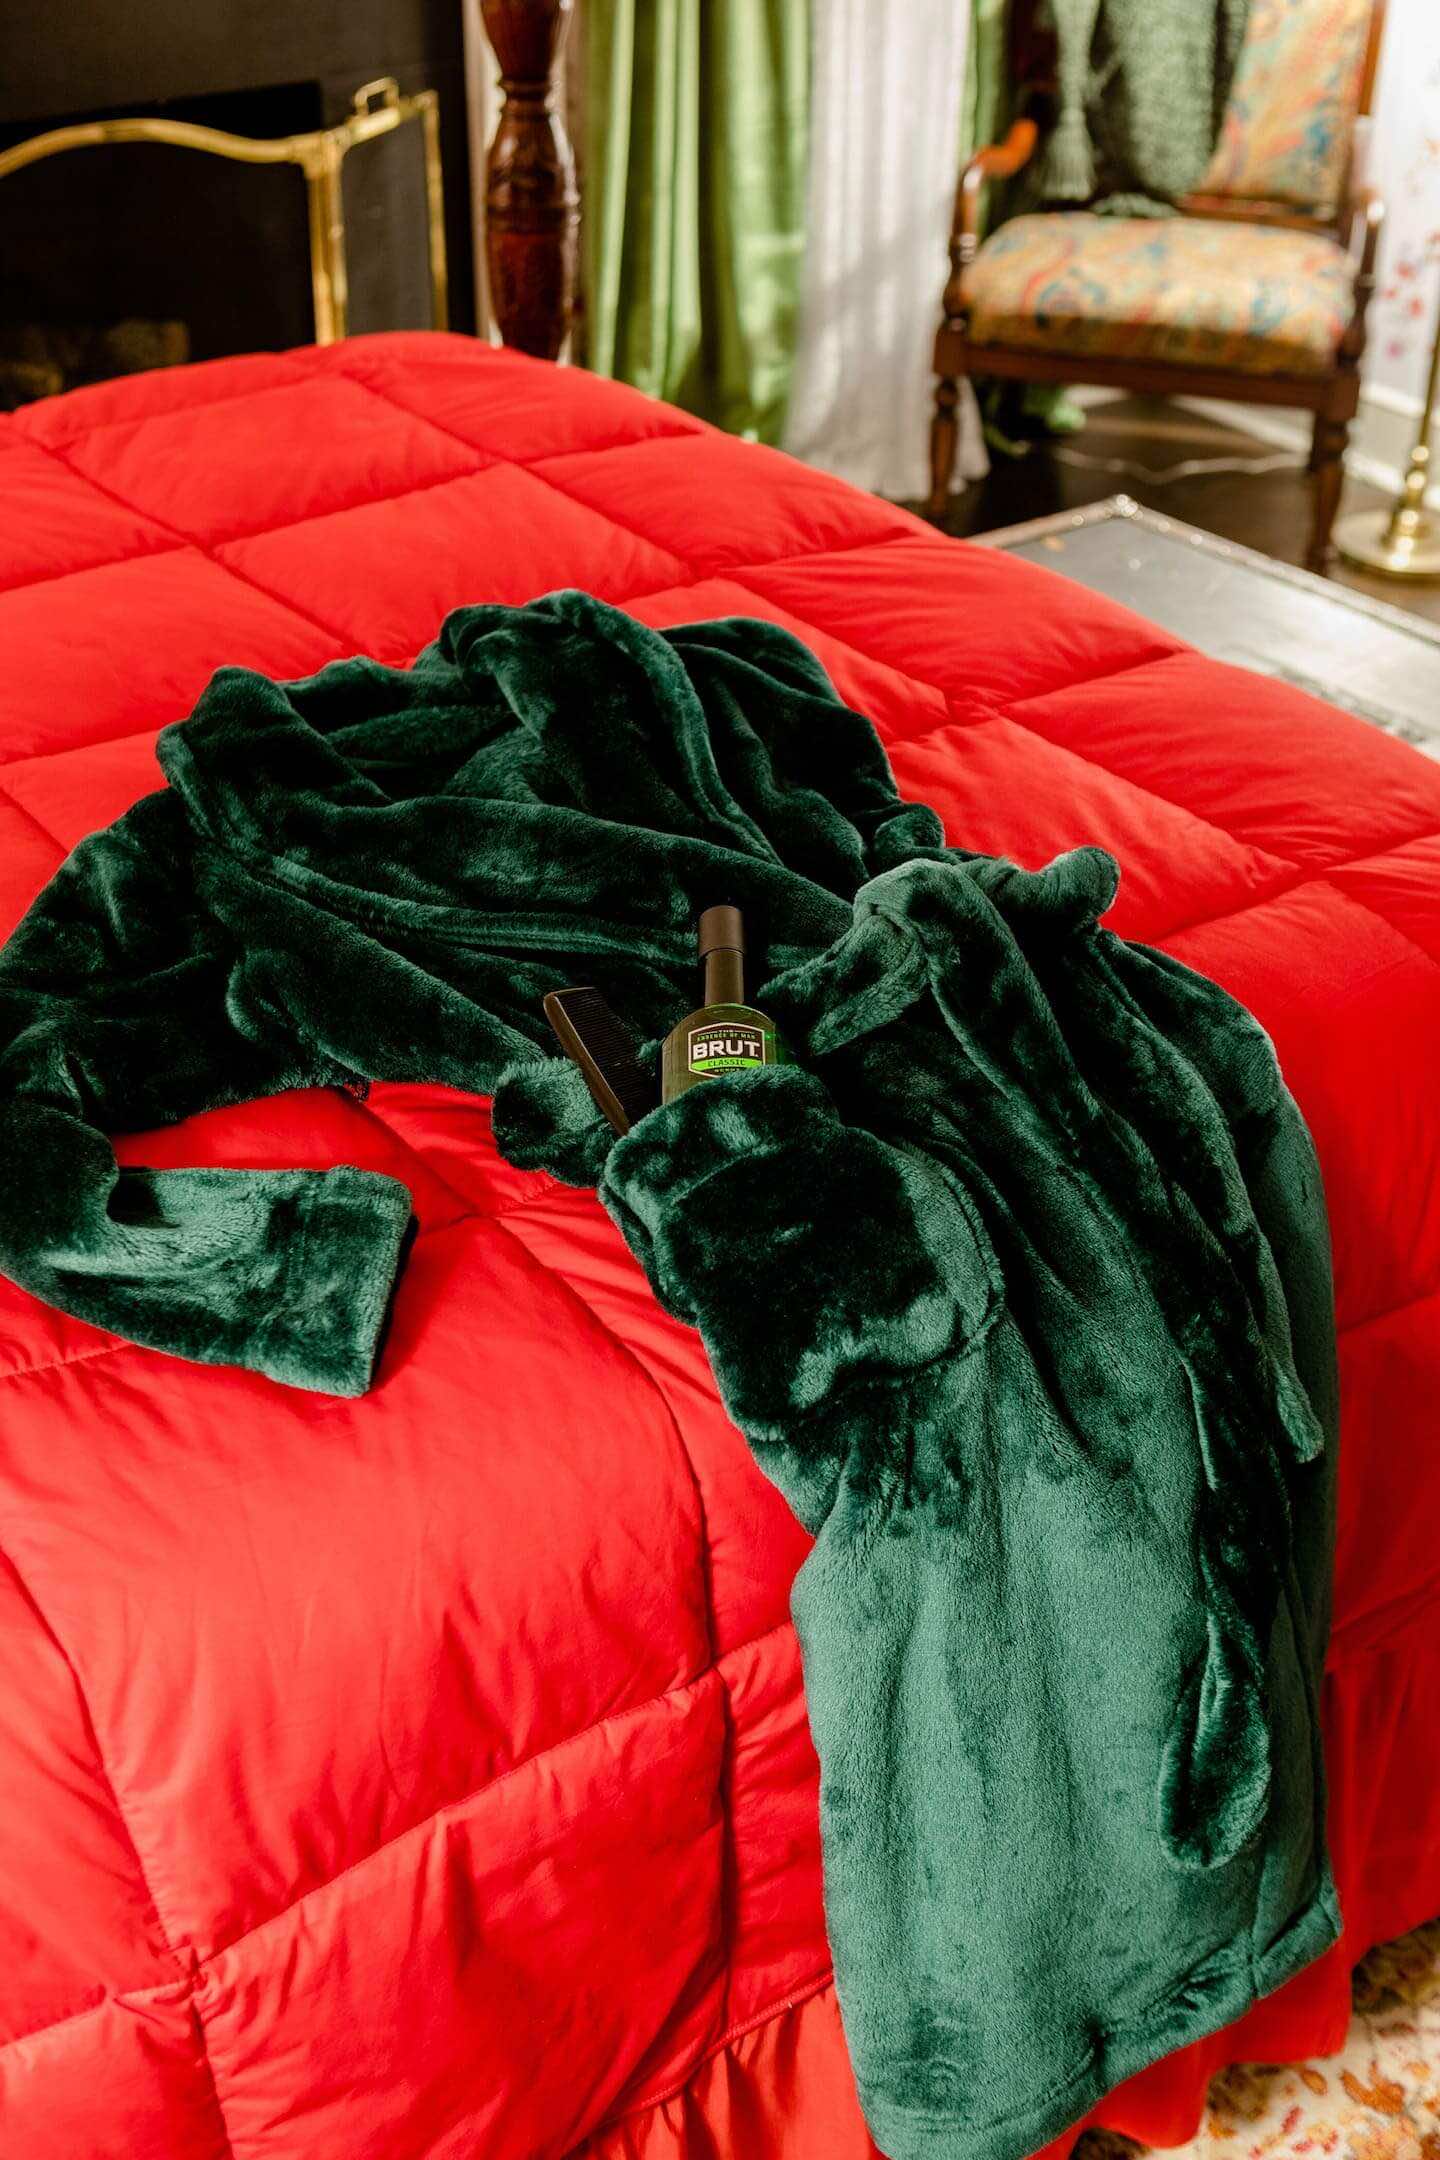 κρεβάτι με κόκκινο πάπλωμα και ποράσινη ρόμπα ακουμπισμένη πάνω